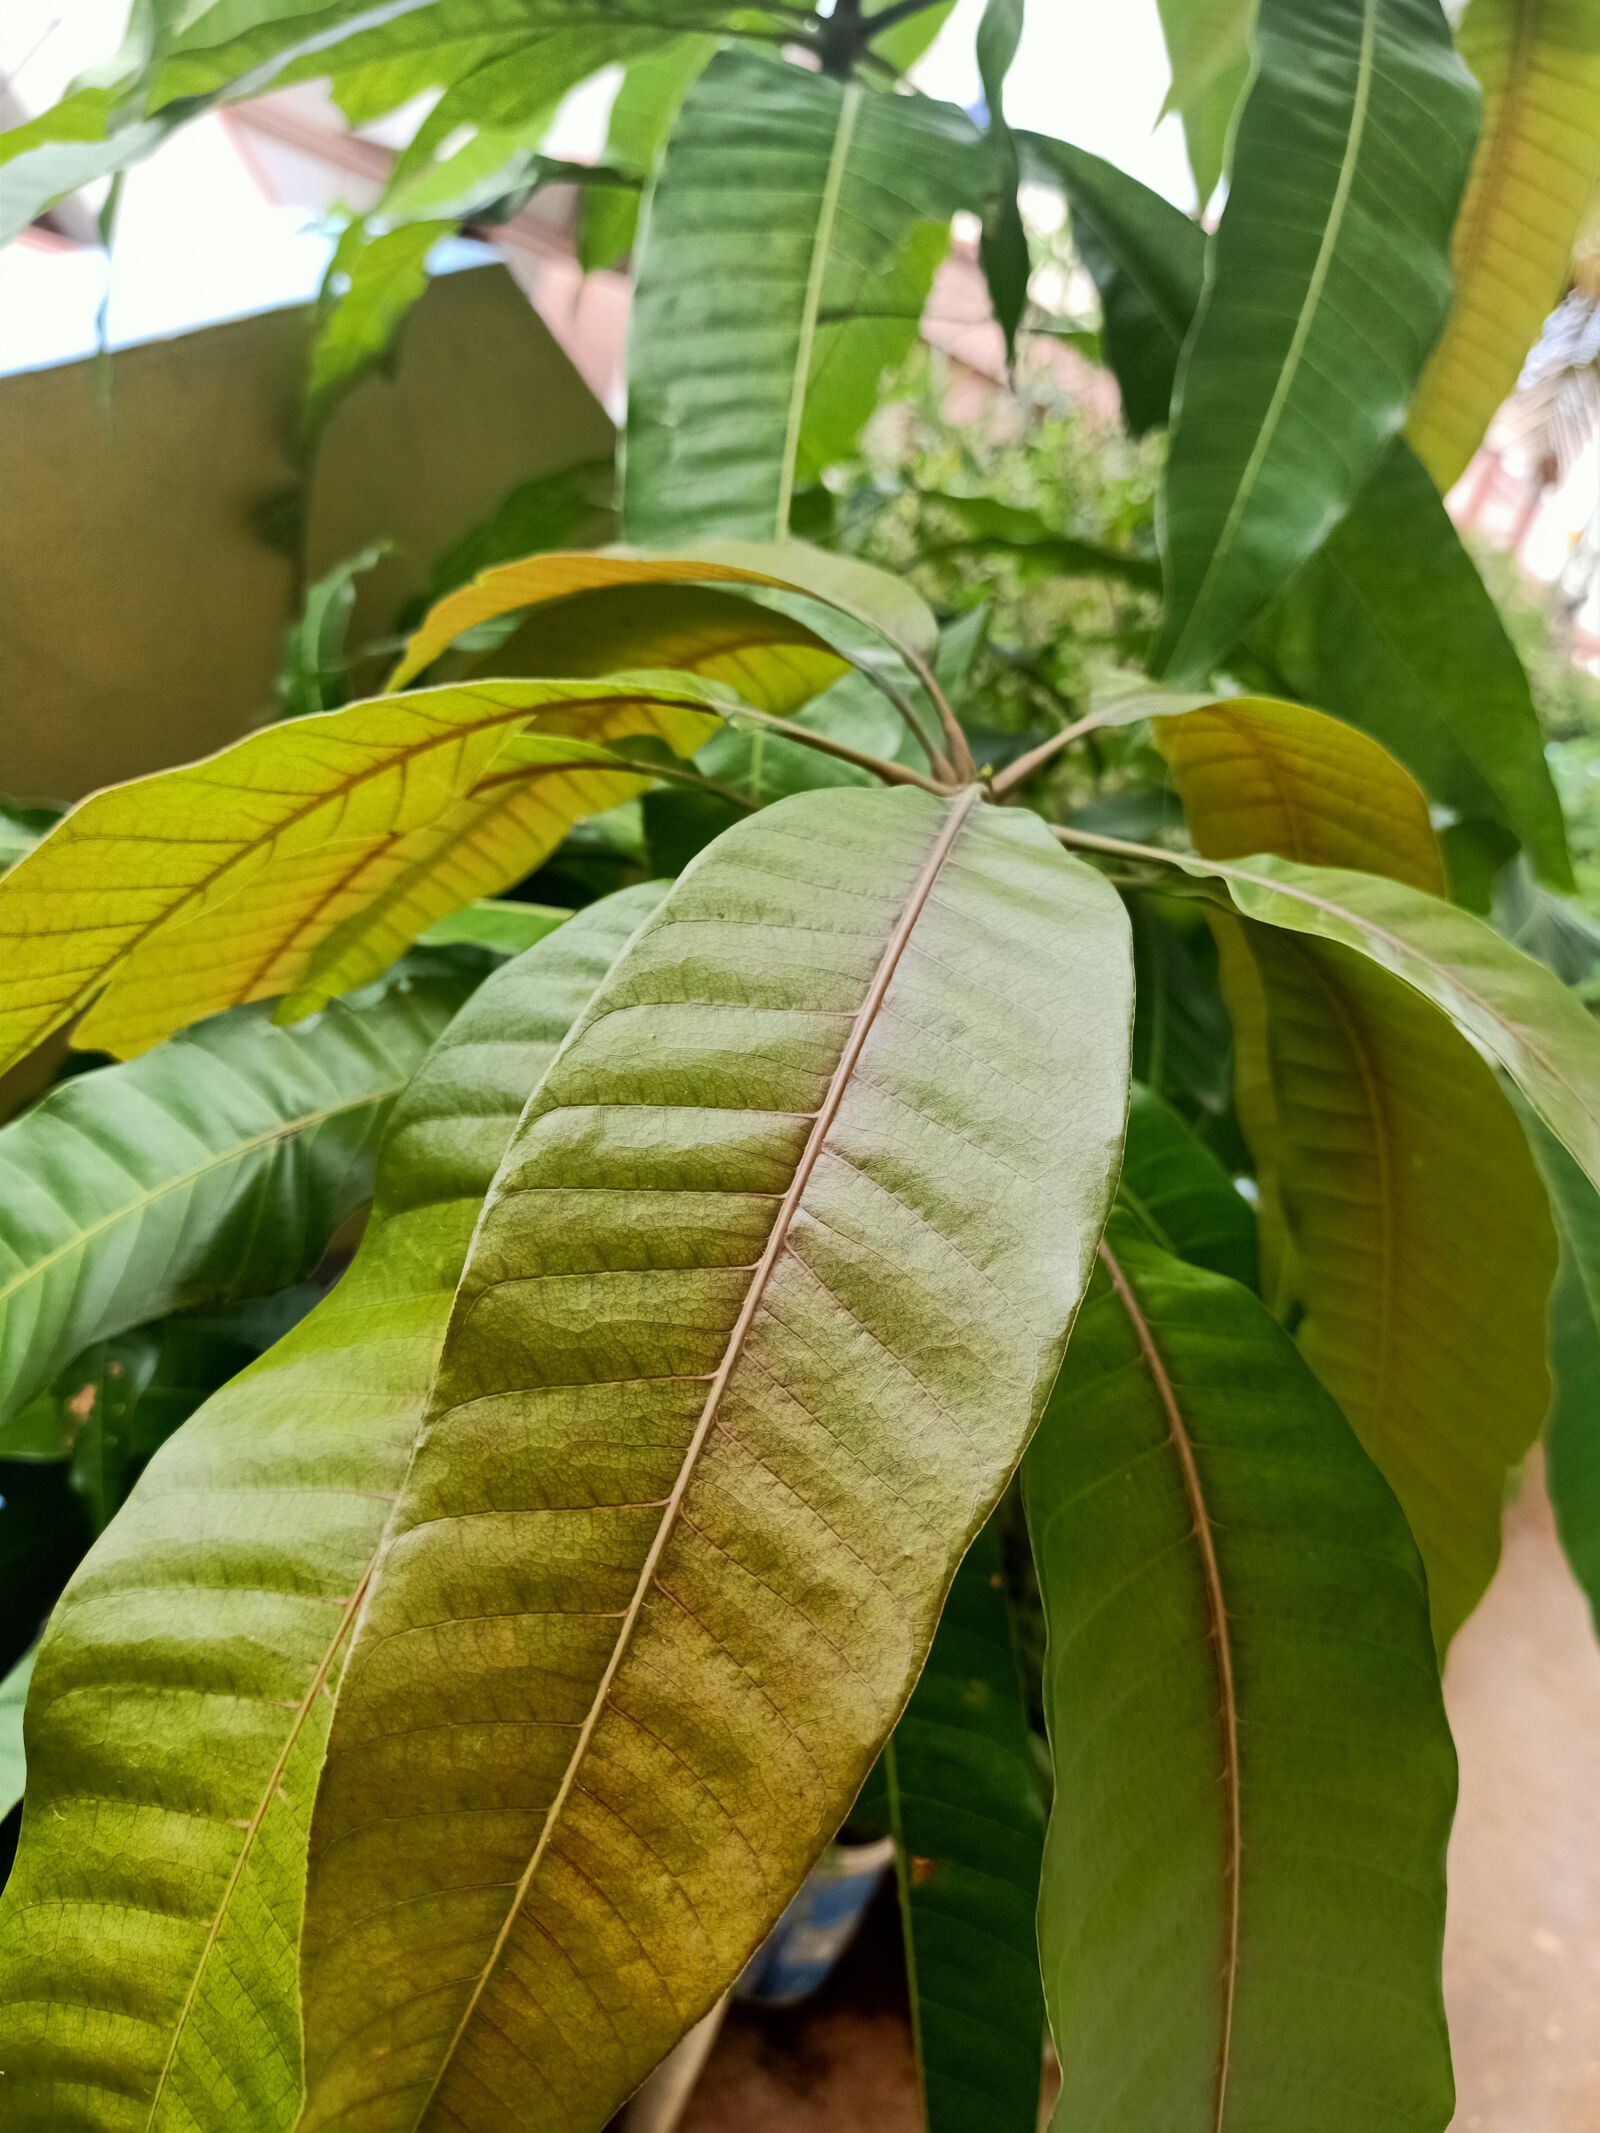 OPPO F11 PRO sample photo. Mango leaf, long leaf photography